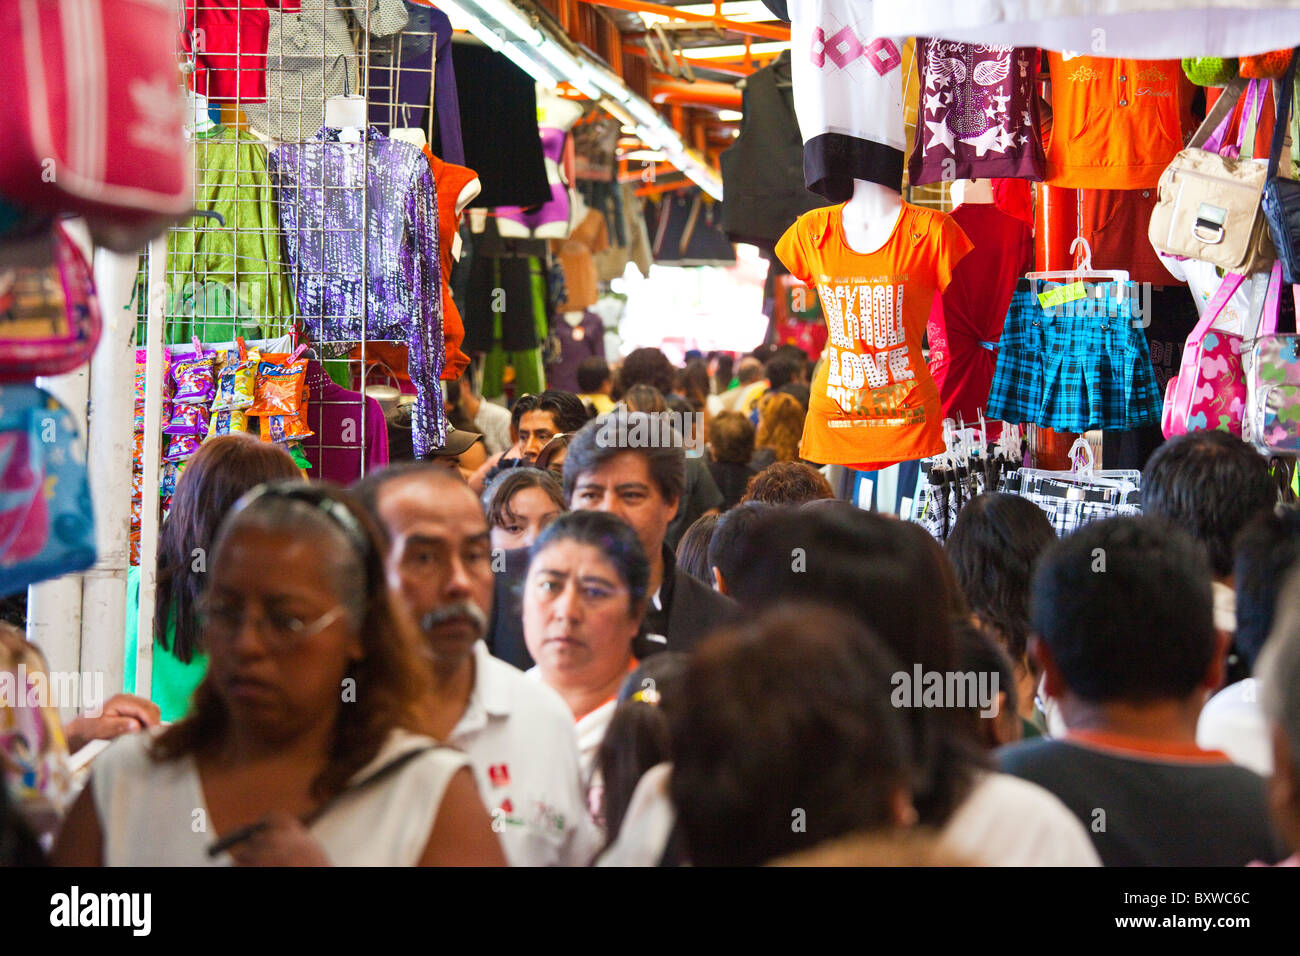 Clothing market in Mexico City, mexico Stock Photo